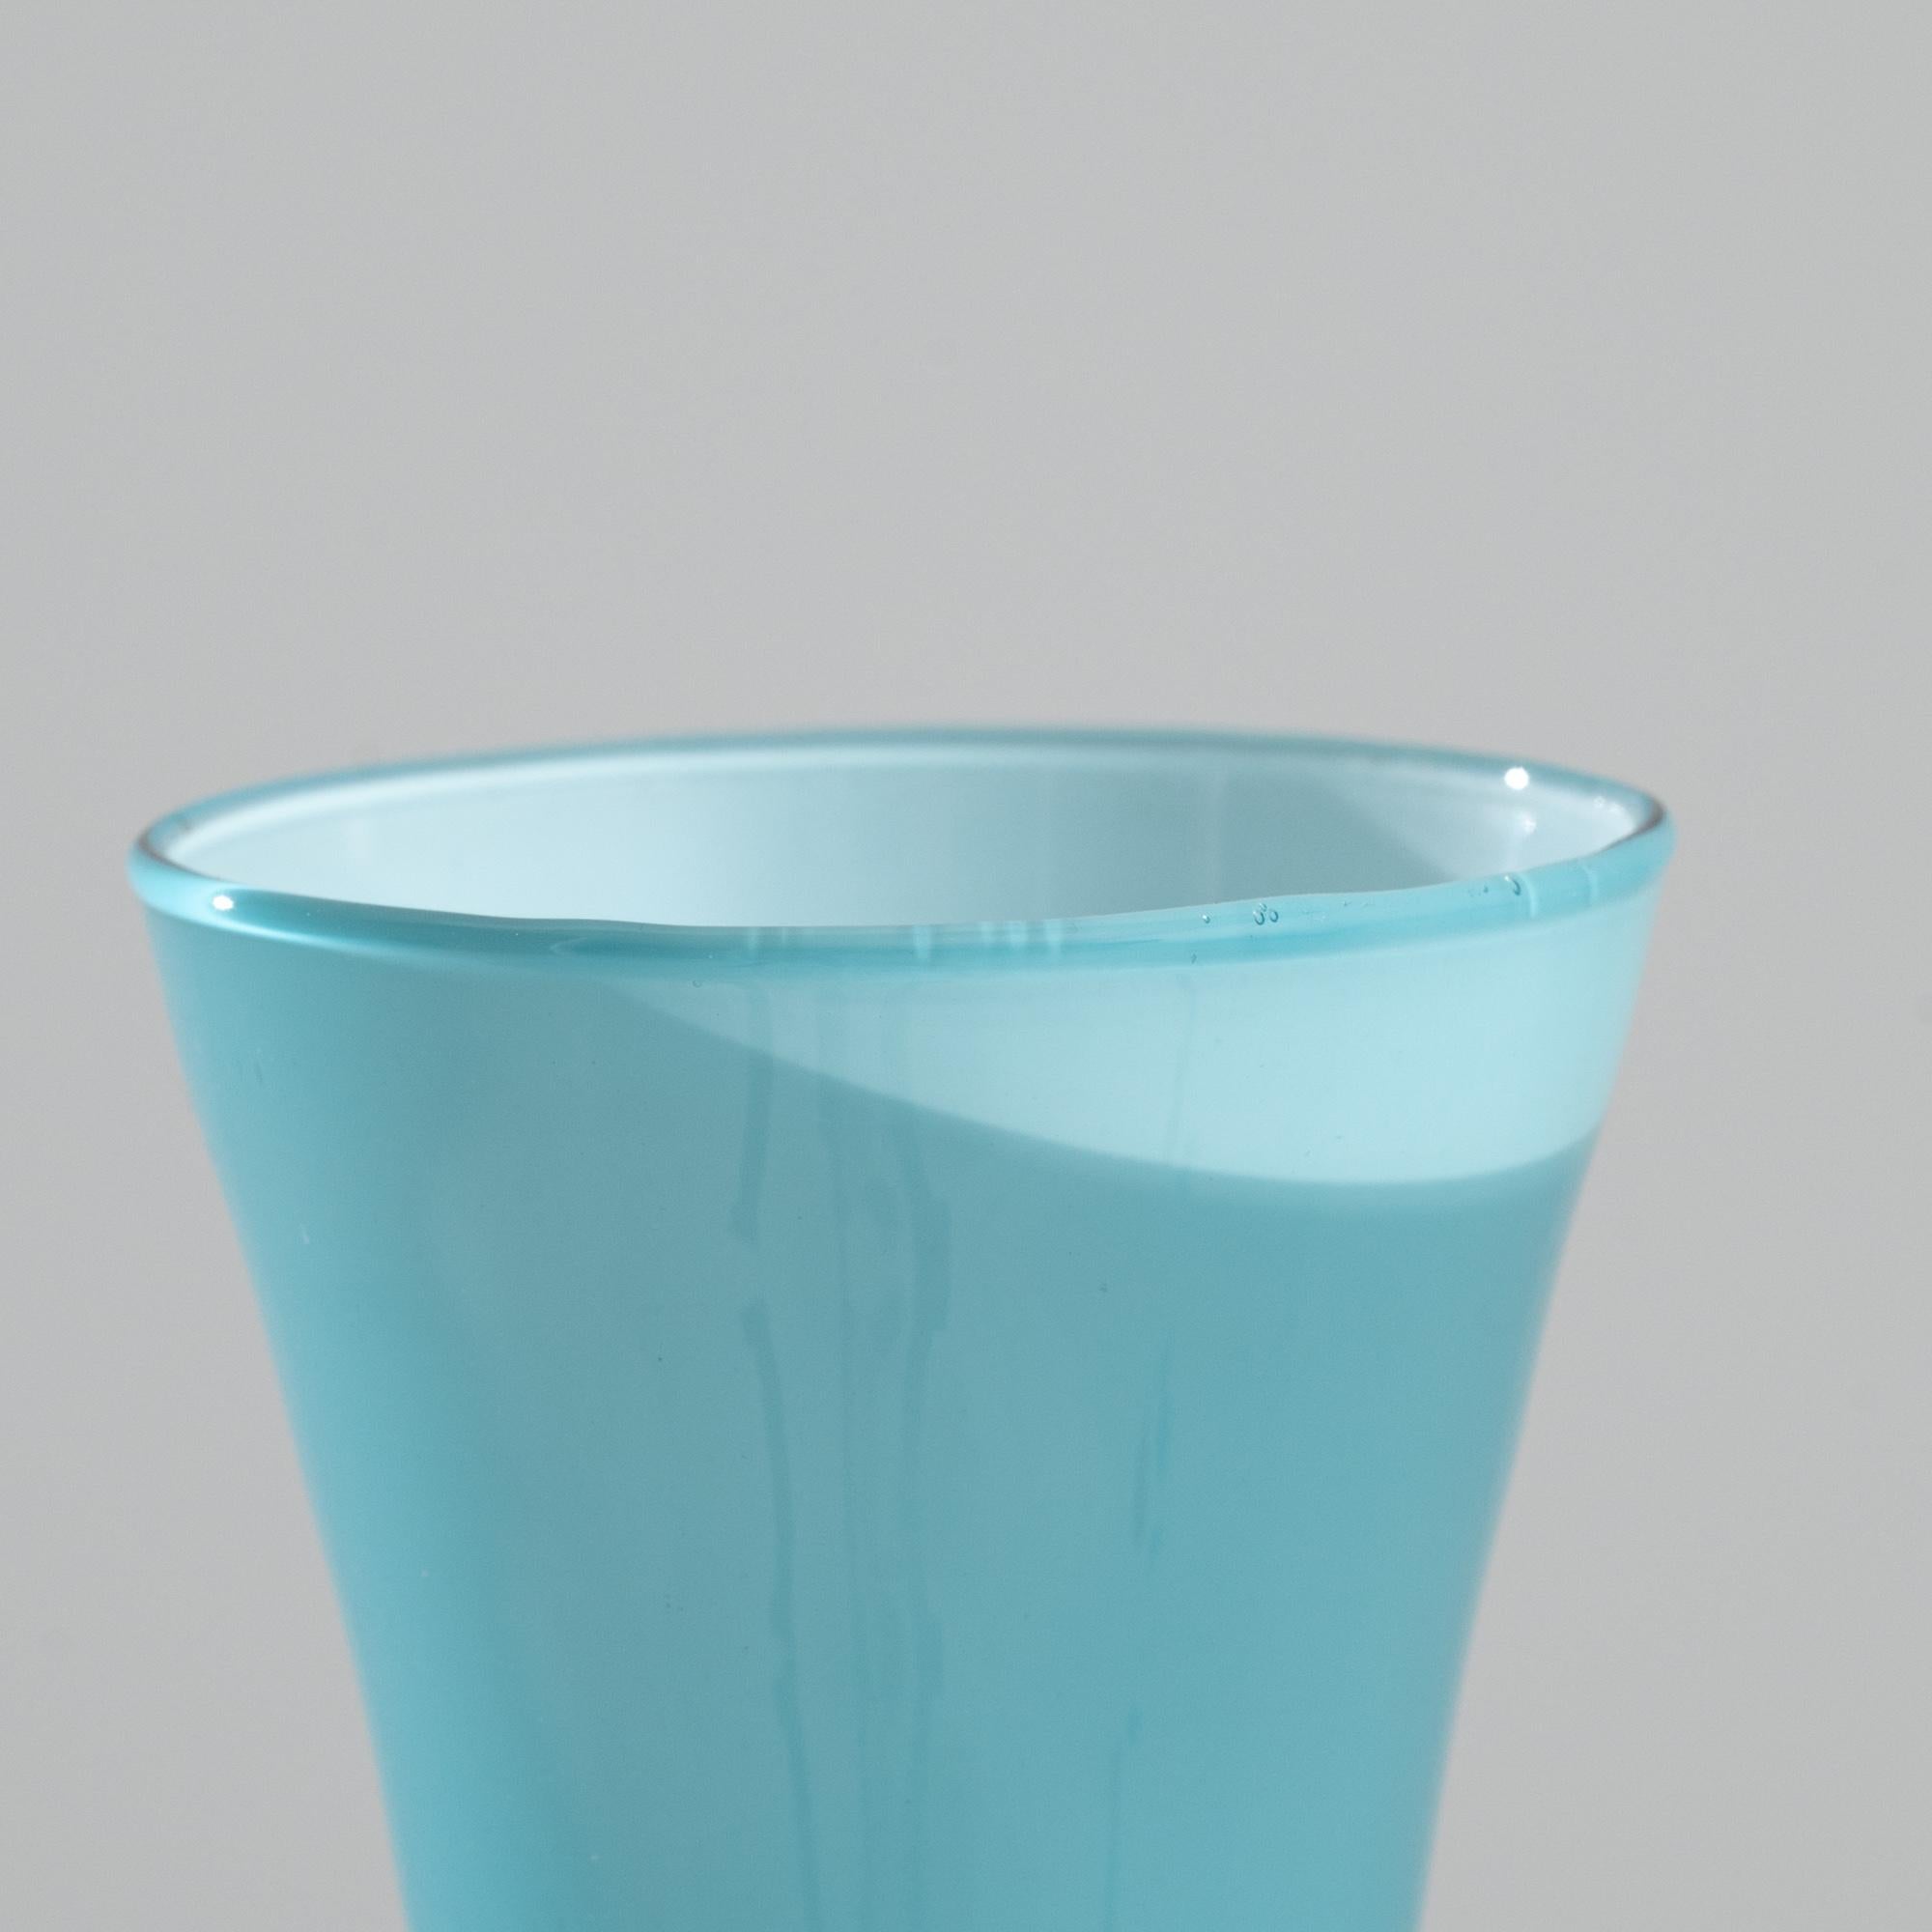 1960s Italian Blue Glass Vase For Sale 2